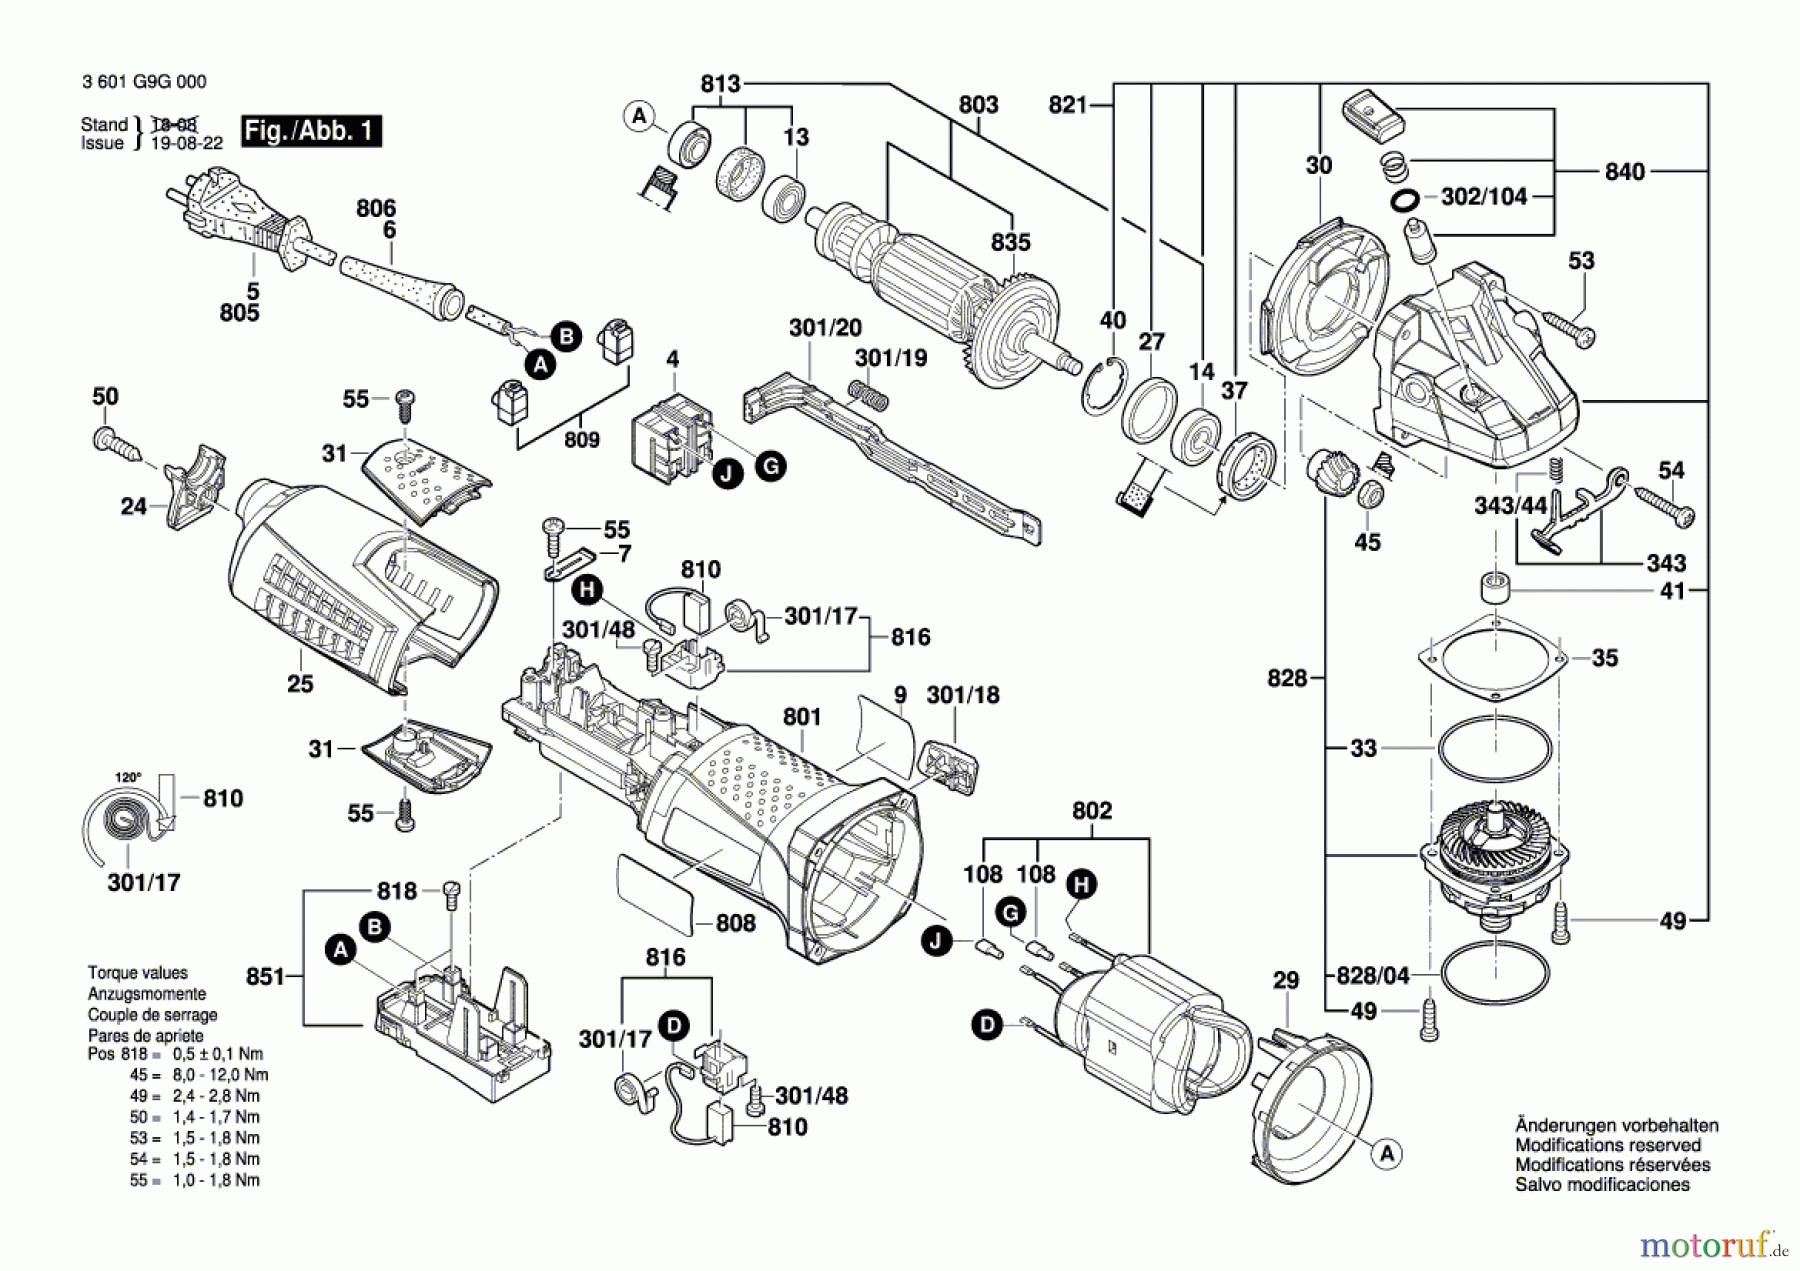  Bosch Werkzeug Winkelschleifer GWS 17-125 CI Seite 1